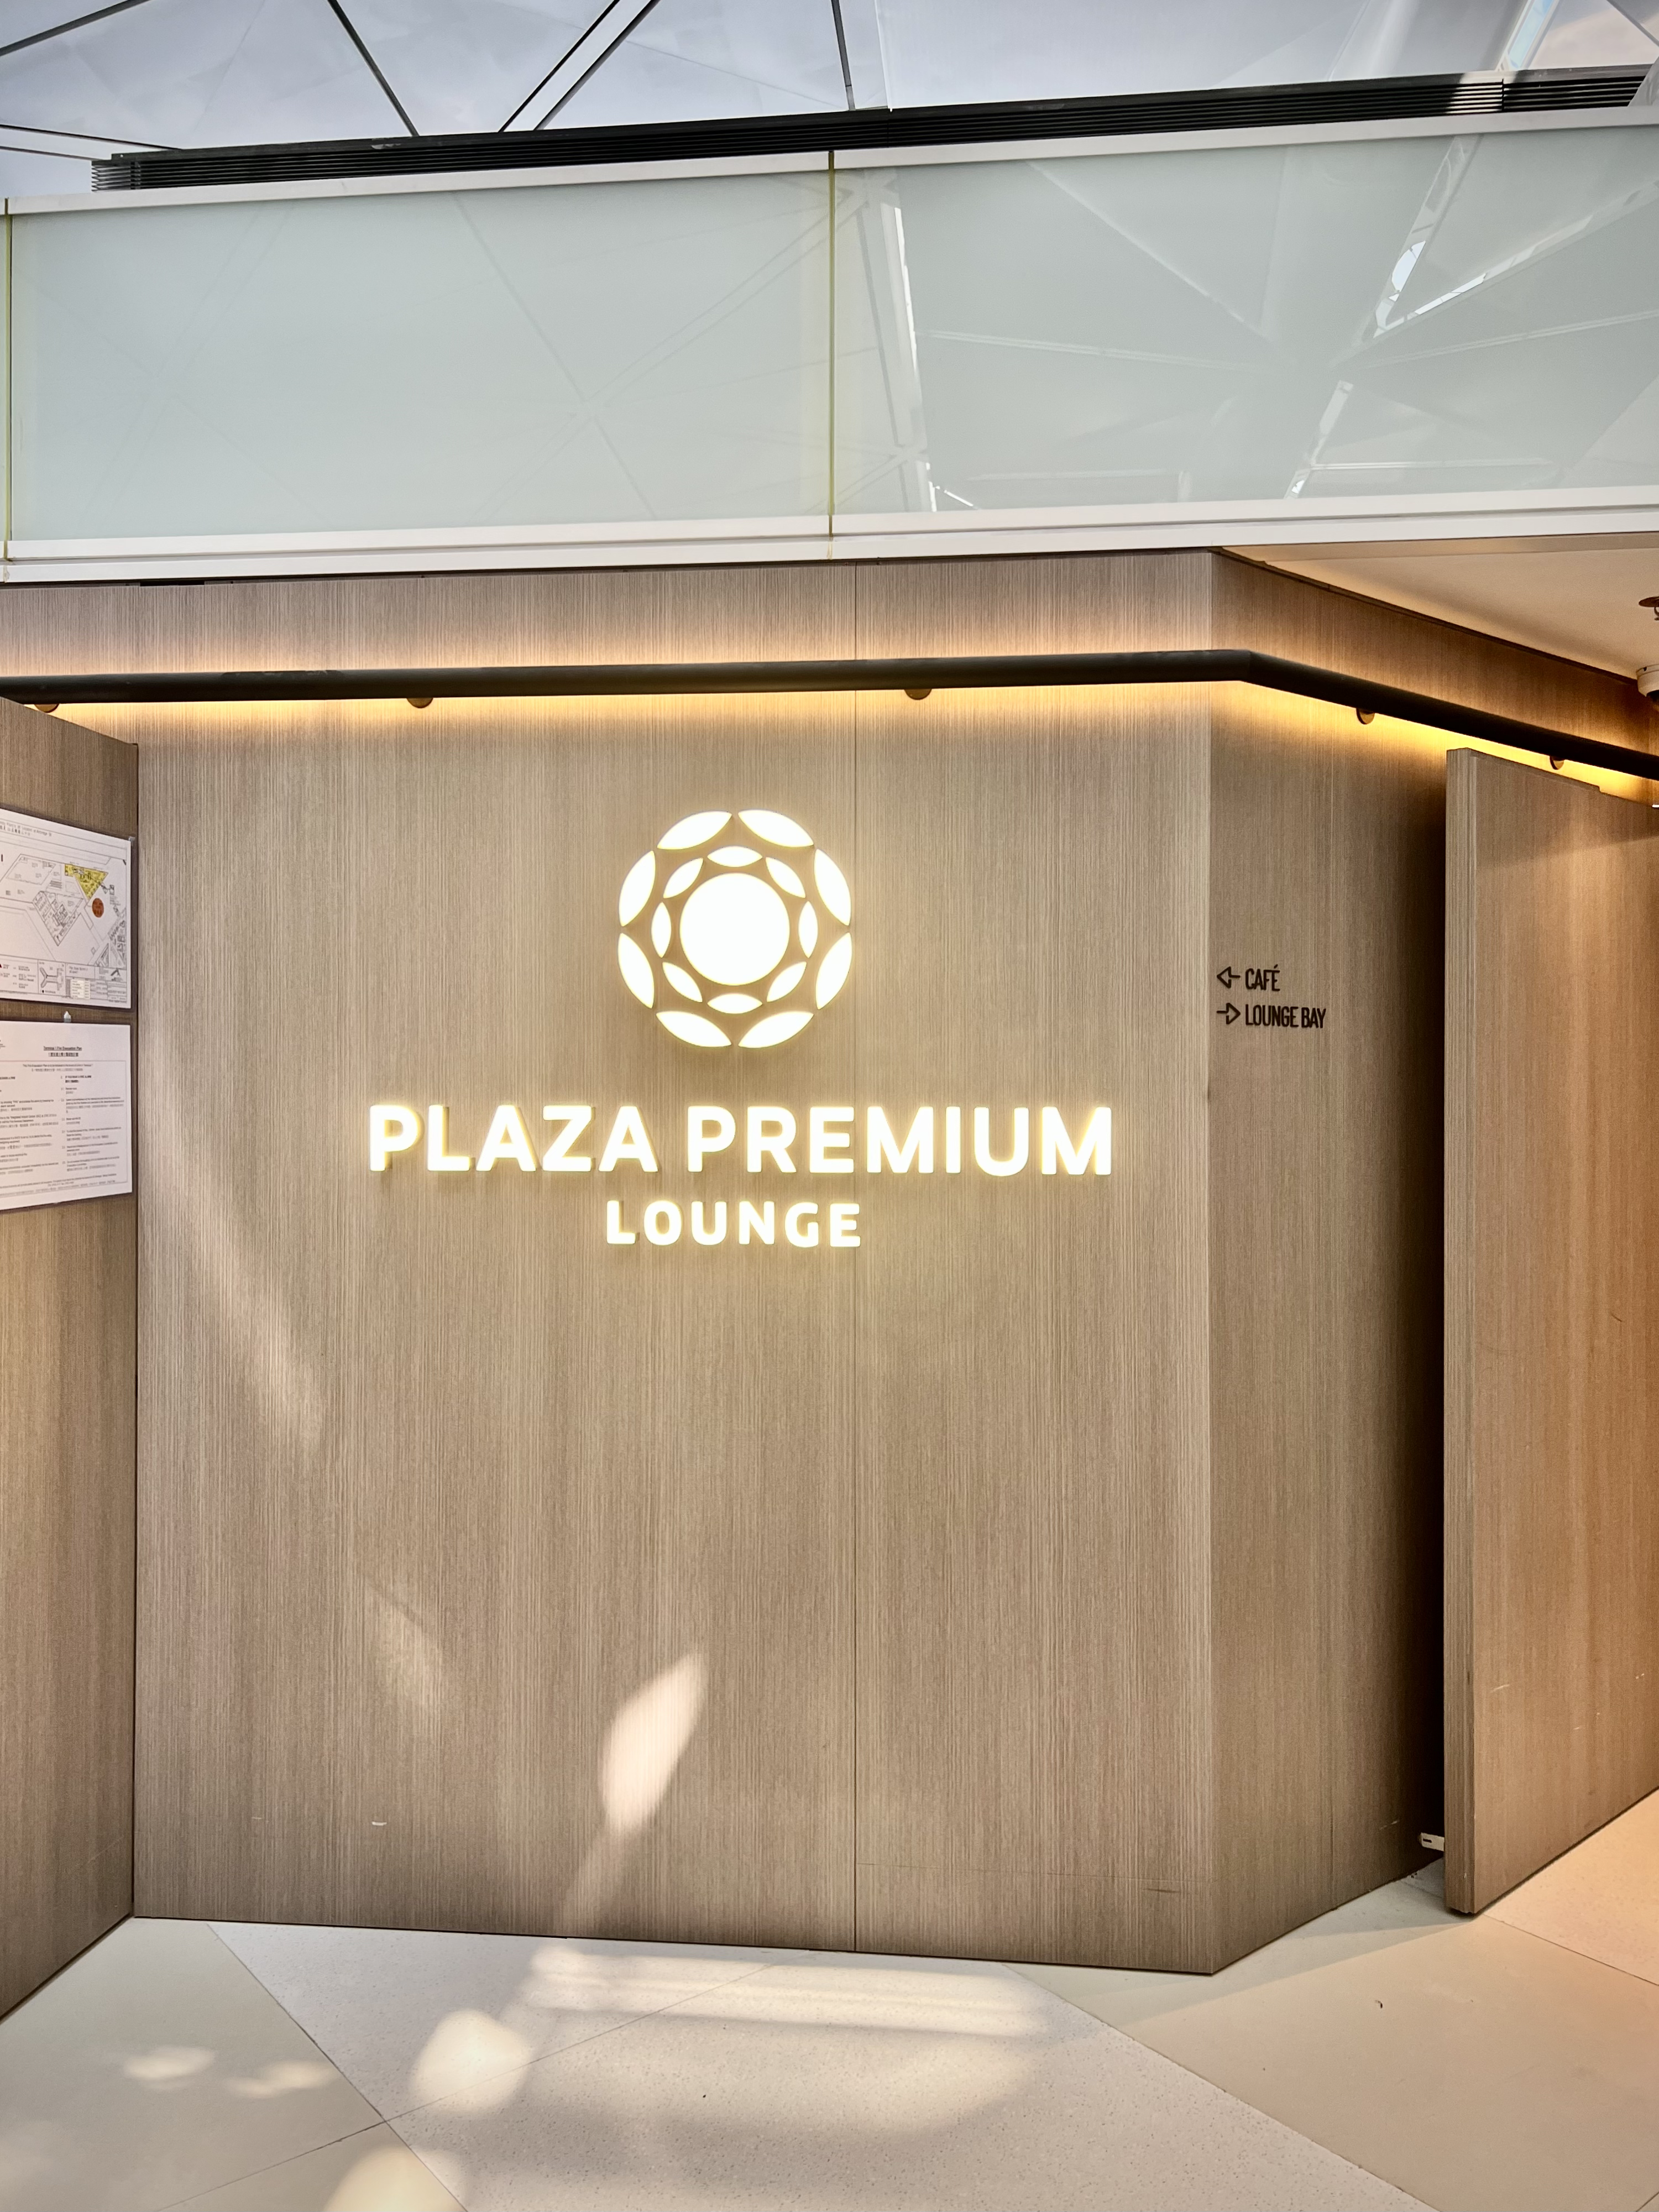 Plaza Premium LoungeGate 60